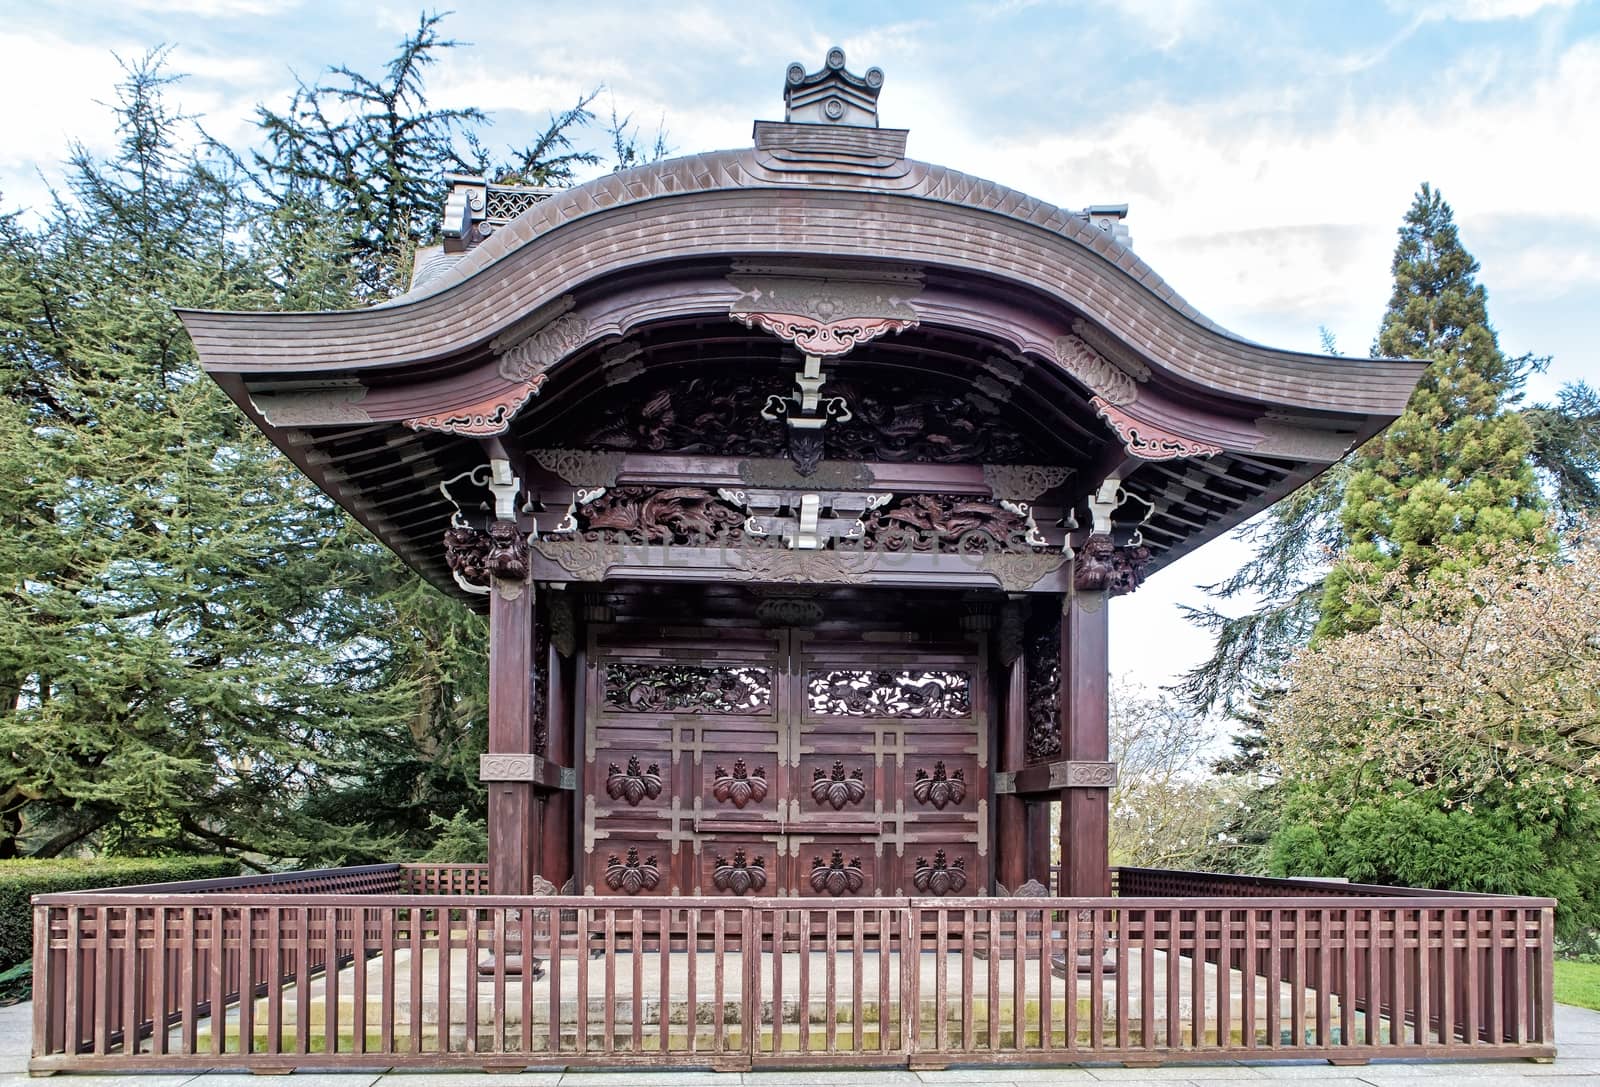 Japanese Gateway in Kew gardens, London by mitakag